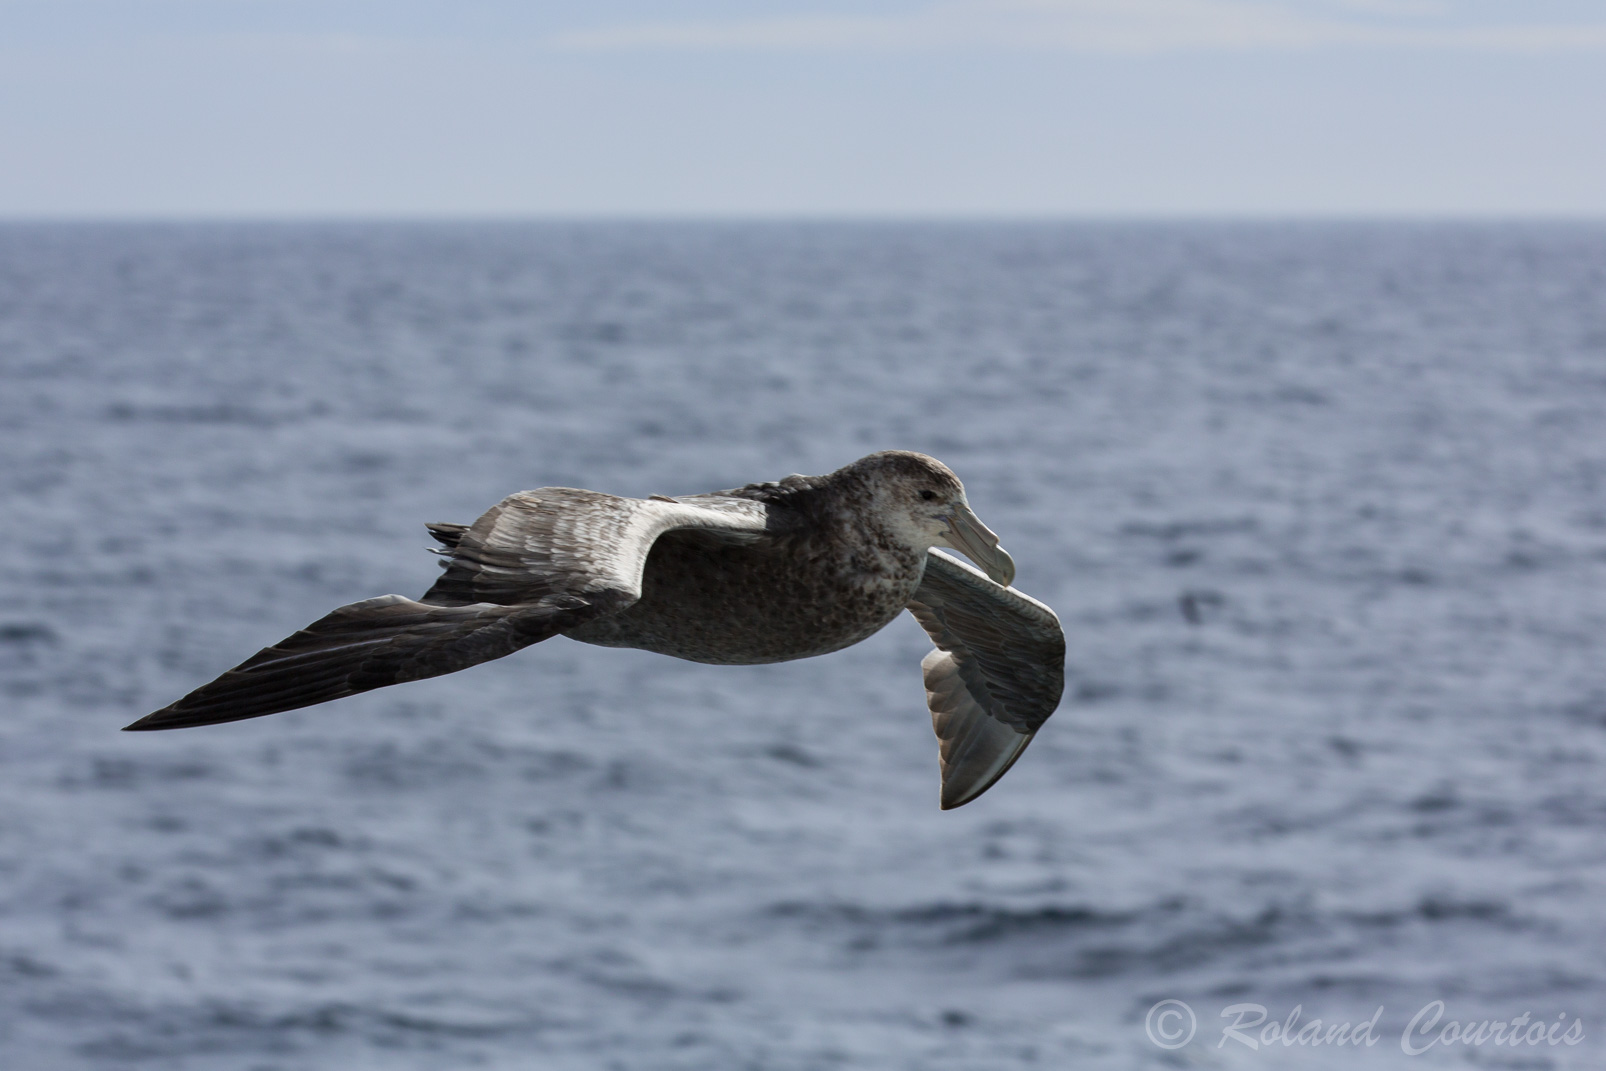 Comme l'albatros, le pétrel géant possède une glande de dessalage de l'eau lui permettant de rejeter le sel excédentaire au niveau des narines.